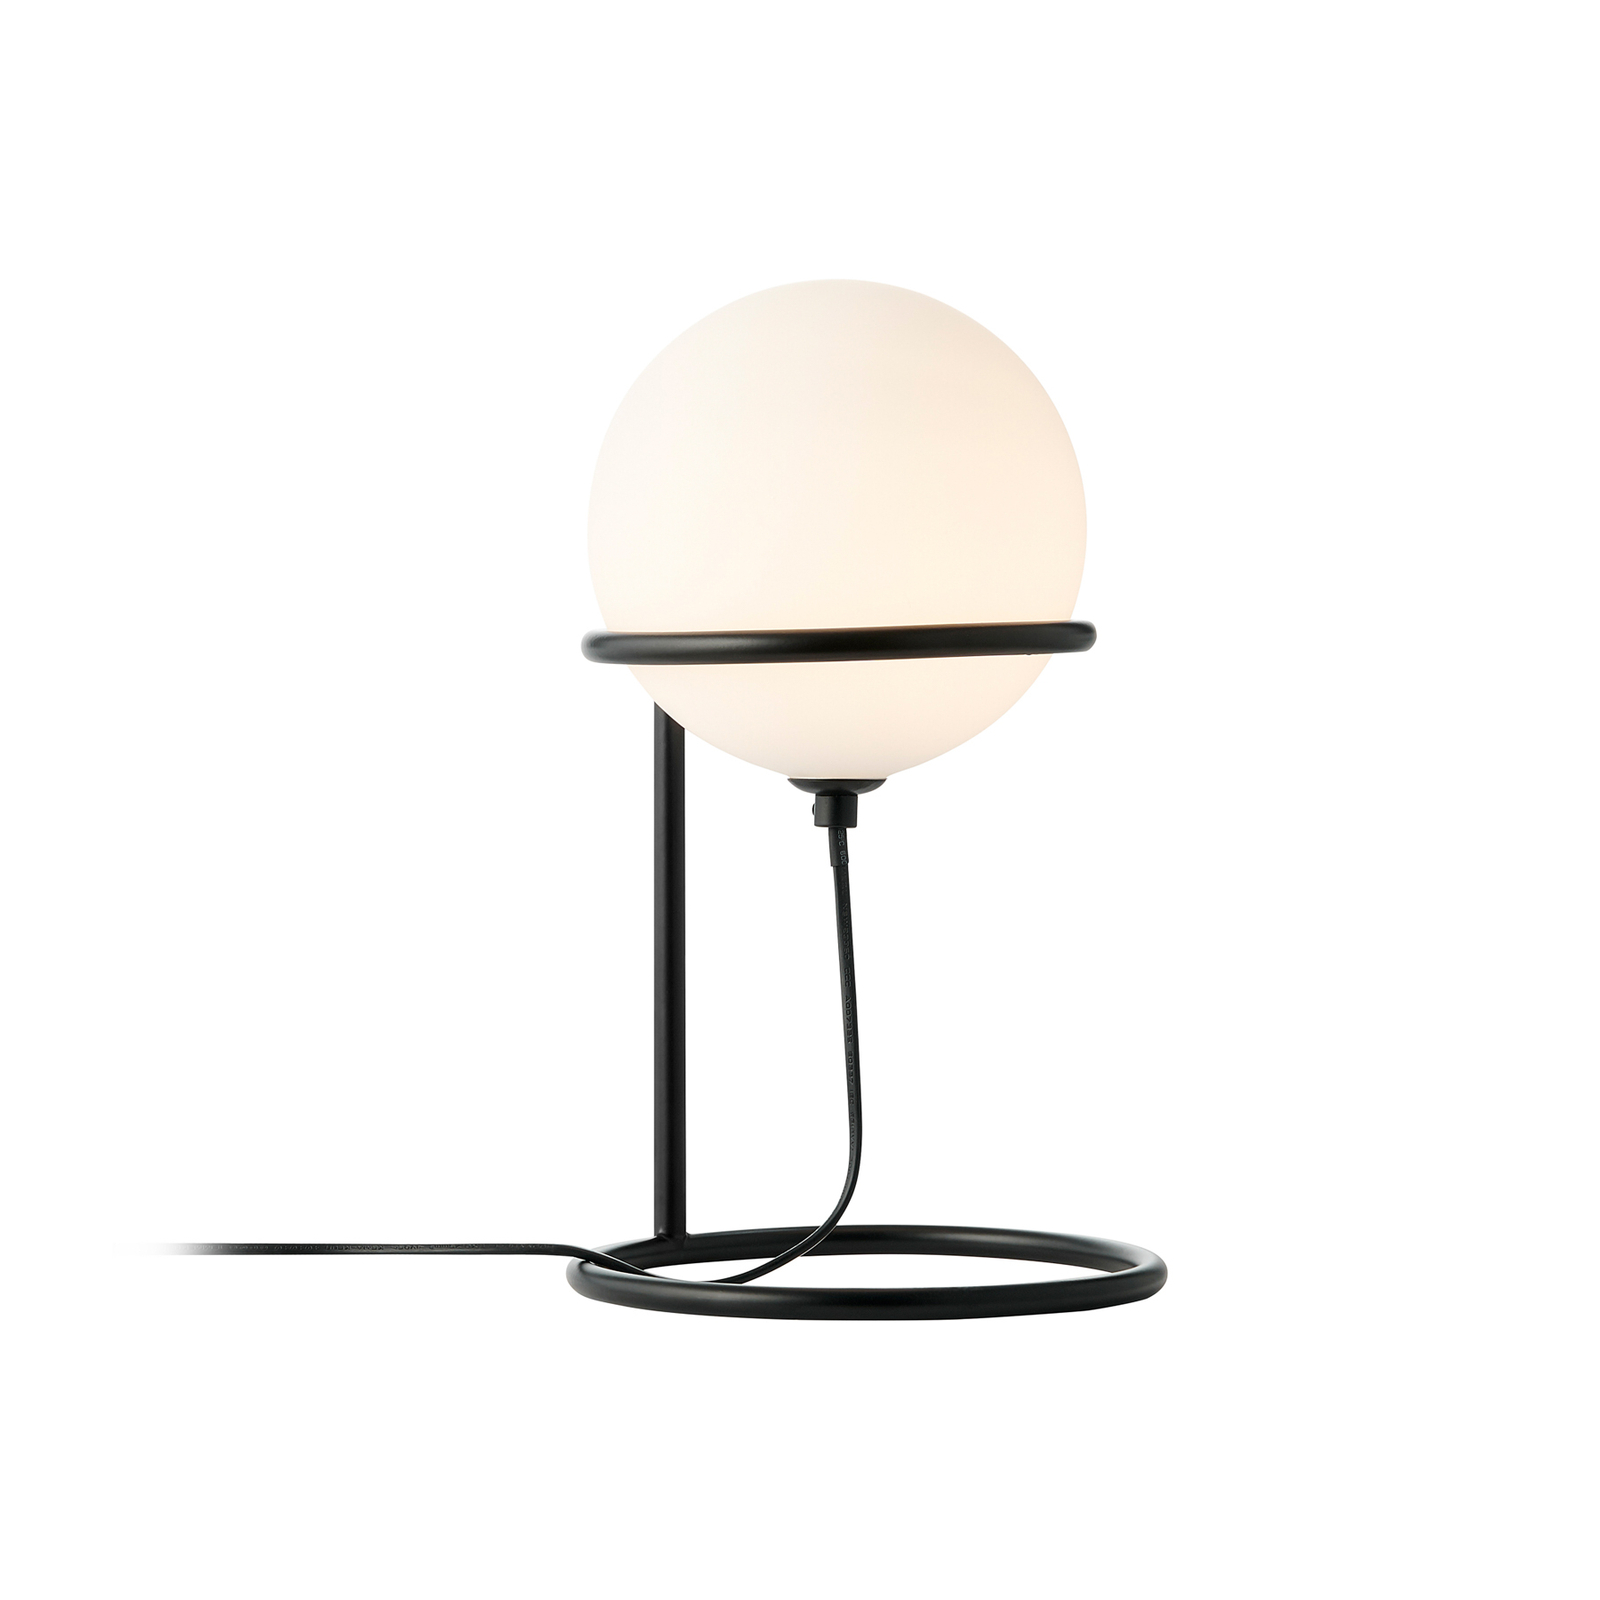 Wilson asztali lámpa, fém, fekete, üveg gömb alakú ernyővel